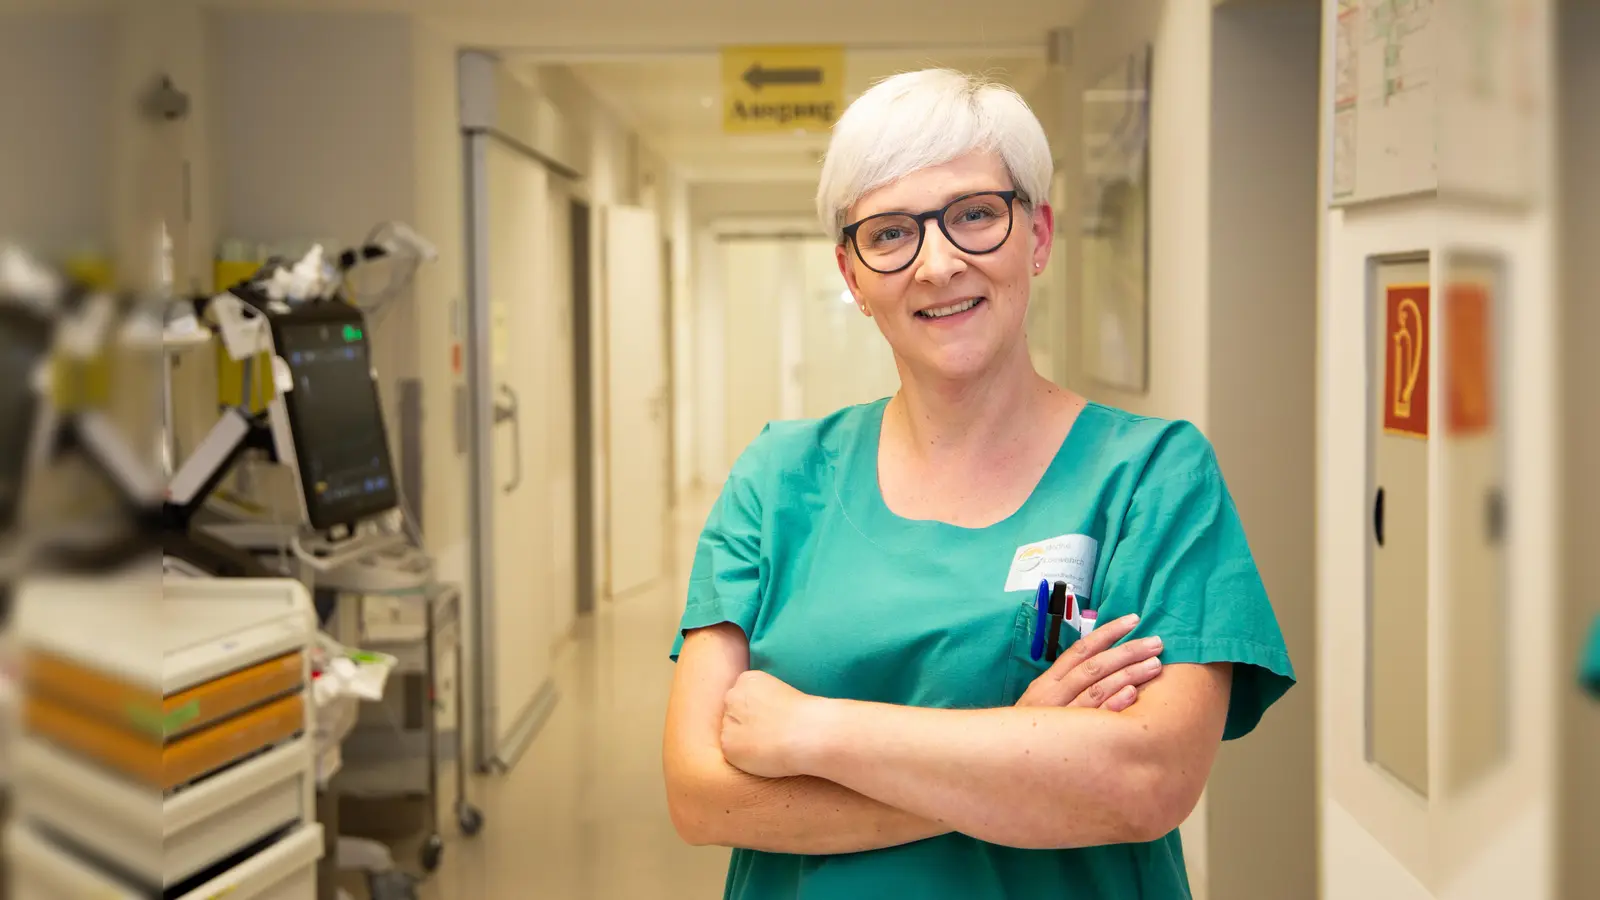 Dörthe Loewenich ist Pflegefachkraft für Intensivpflege und Anästhesie am St. Ansgar Krankenhaus der KHWE. Sie hat ihre Berufung darin gefunden, Menschen in ihren schwächsten Momenten zu unterstützen. (Foto: KHWE)